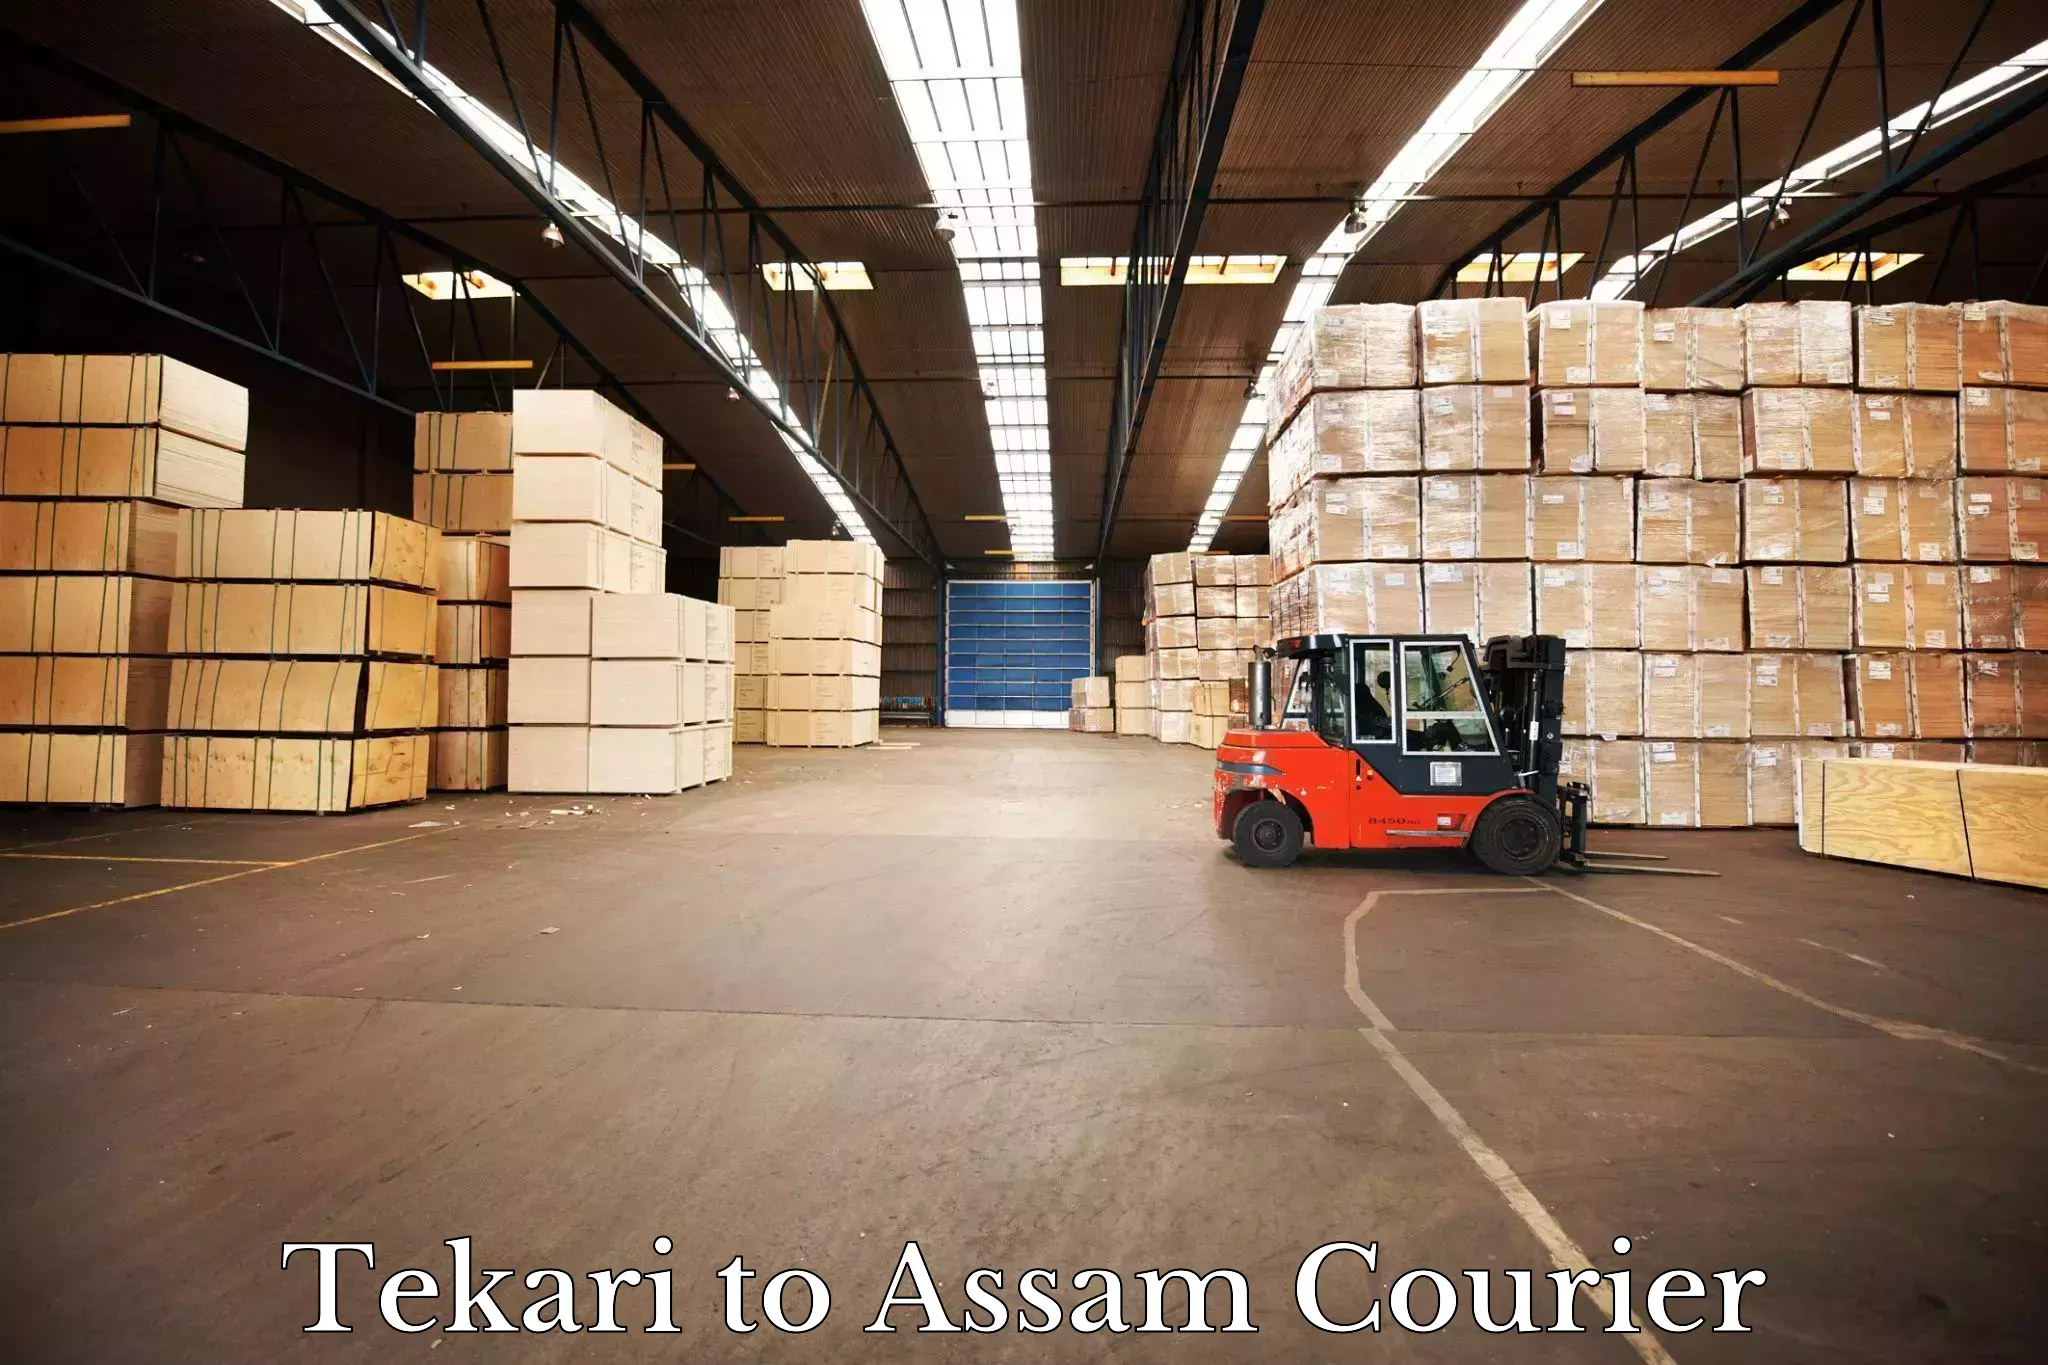 Express courier facilities Tekari to Mayang